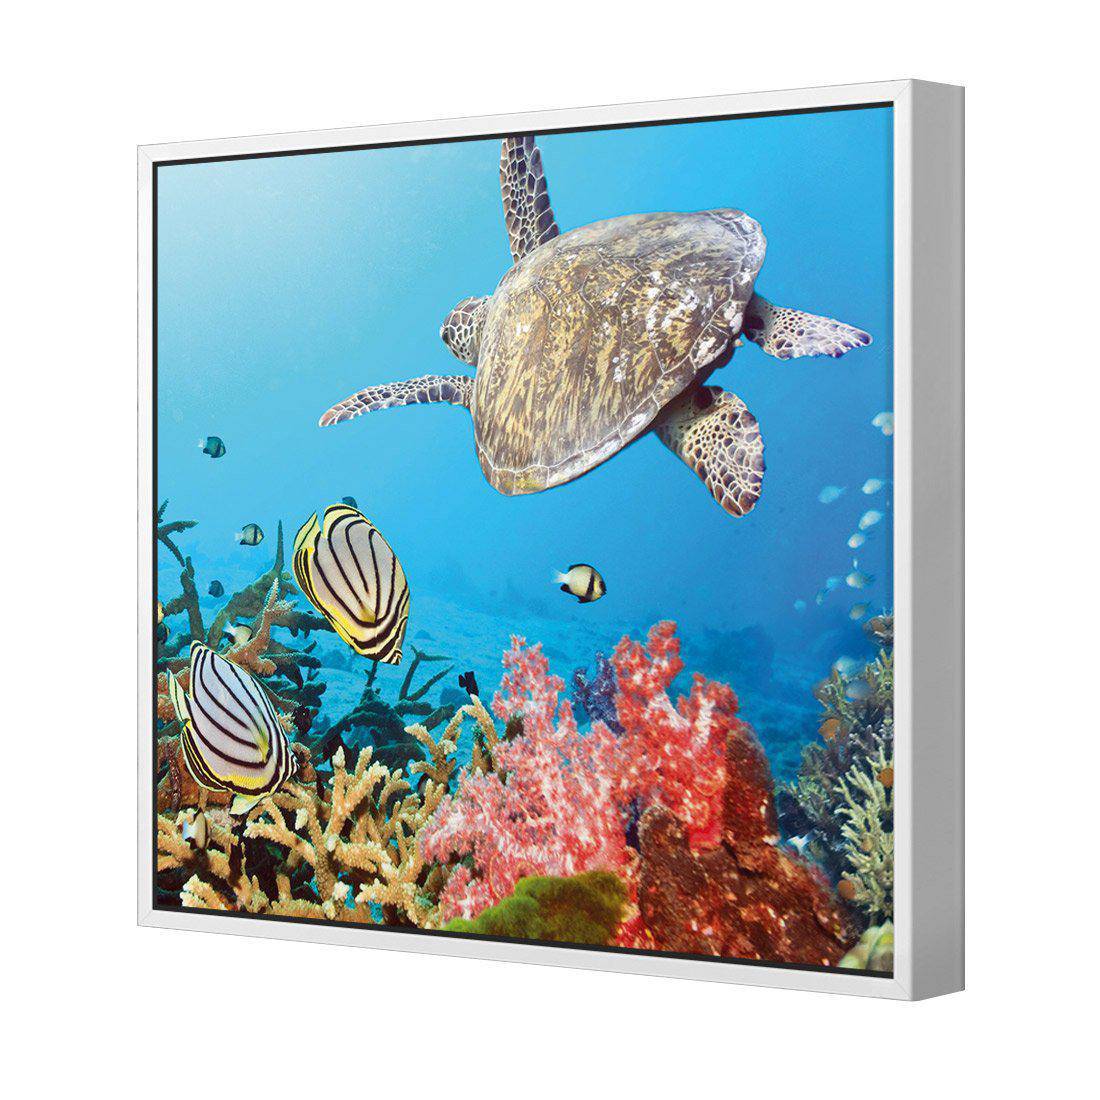 Coral Sea, Square Canvas Art-Canvas-Wall Art Designs-30x30cm-Canvas - White Frame-Wall Art Designs